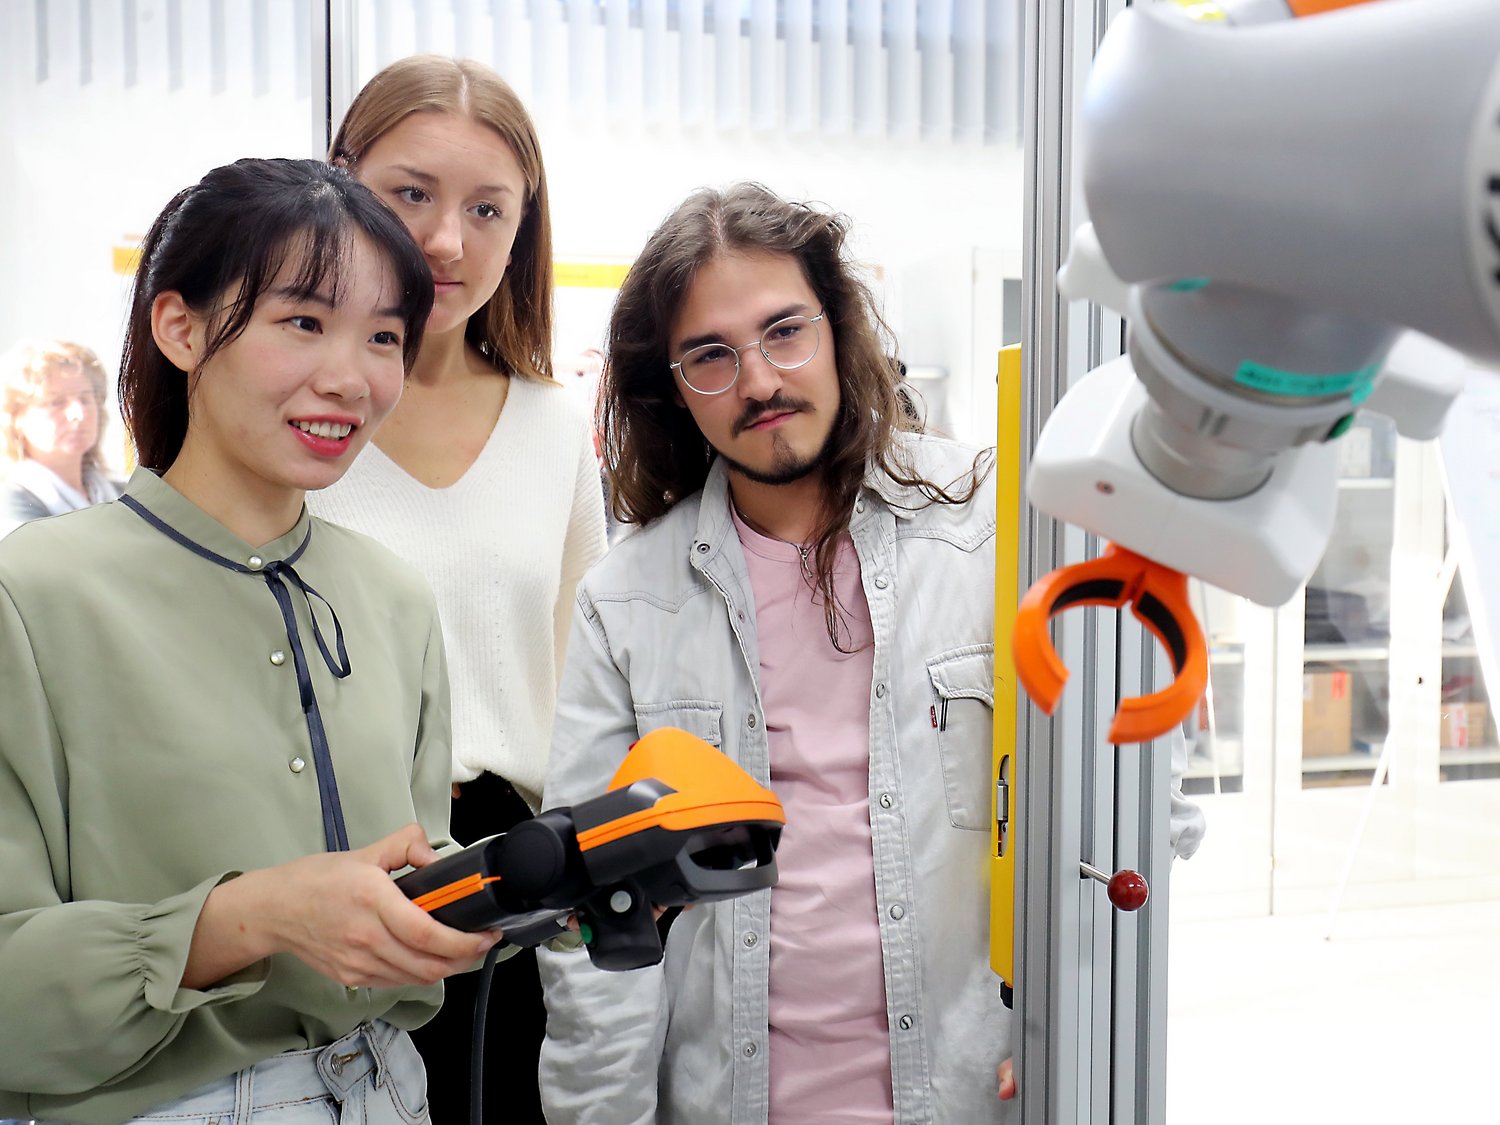 Drei Personen stehen vor dem Arm eines Roboters. Eine Person hat ein Bedienfeld in der Hand.